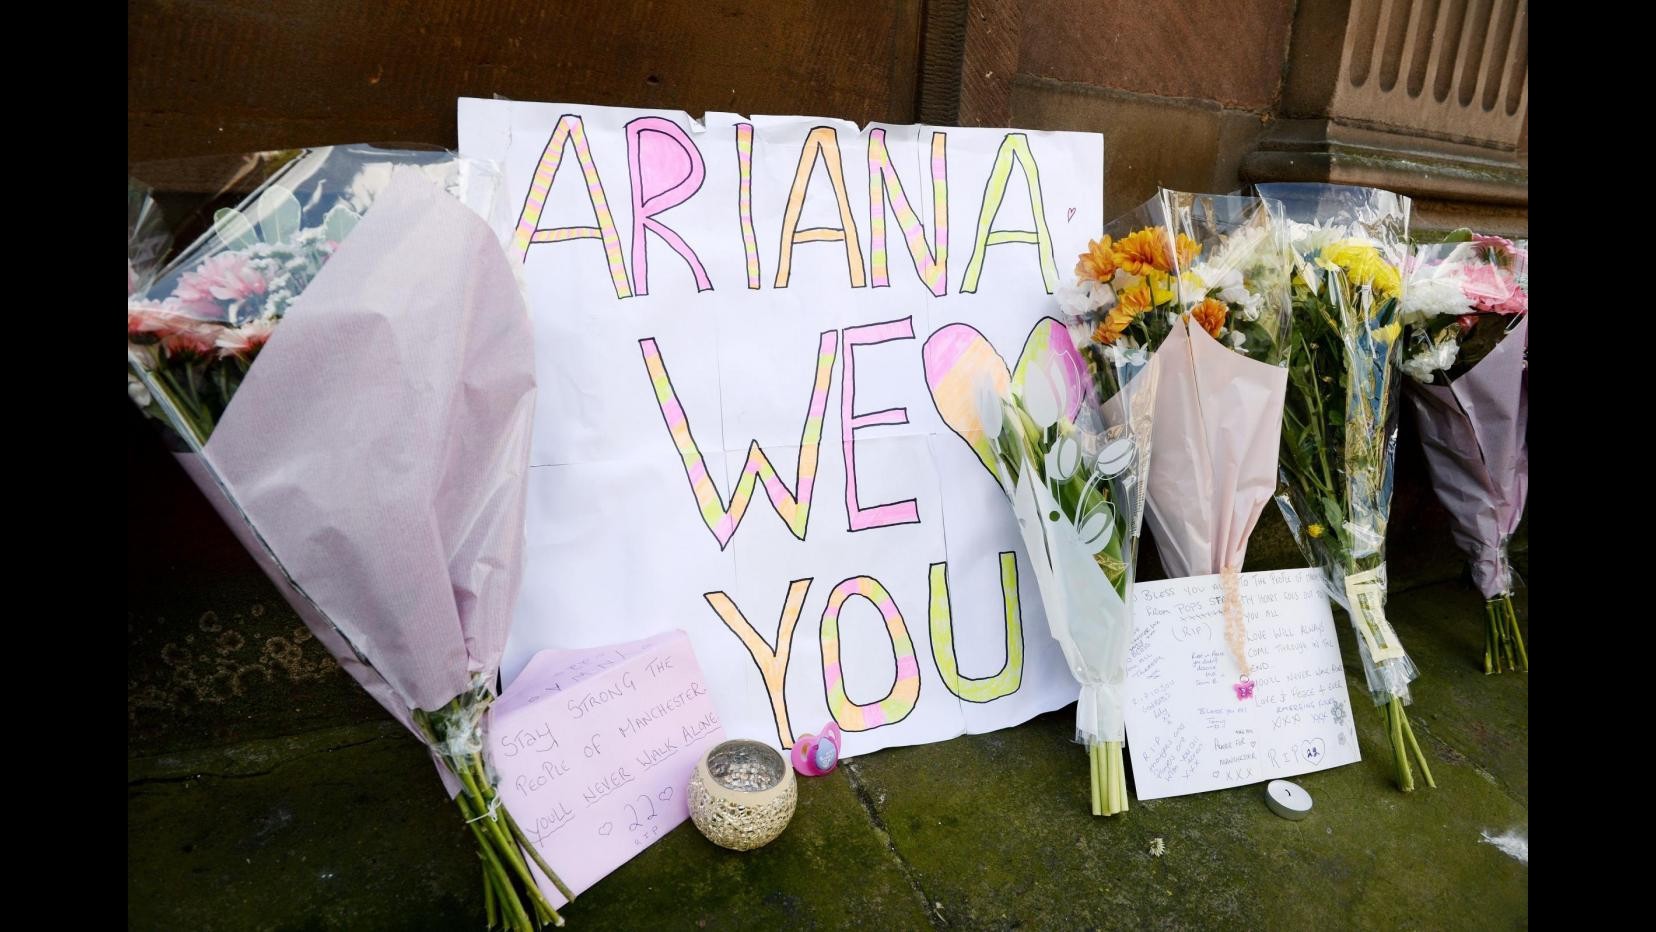 FOTO Omaggio floreale per le vittime dell’attentato di Manchester